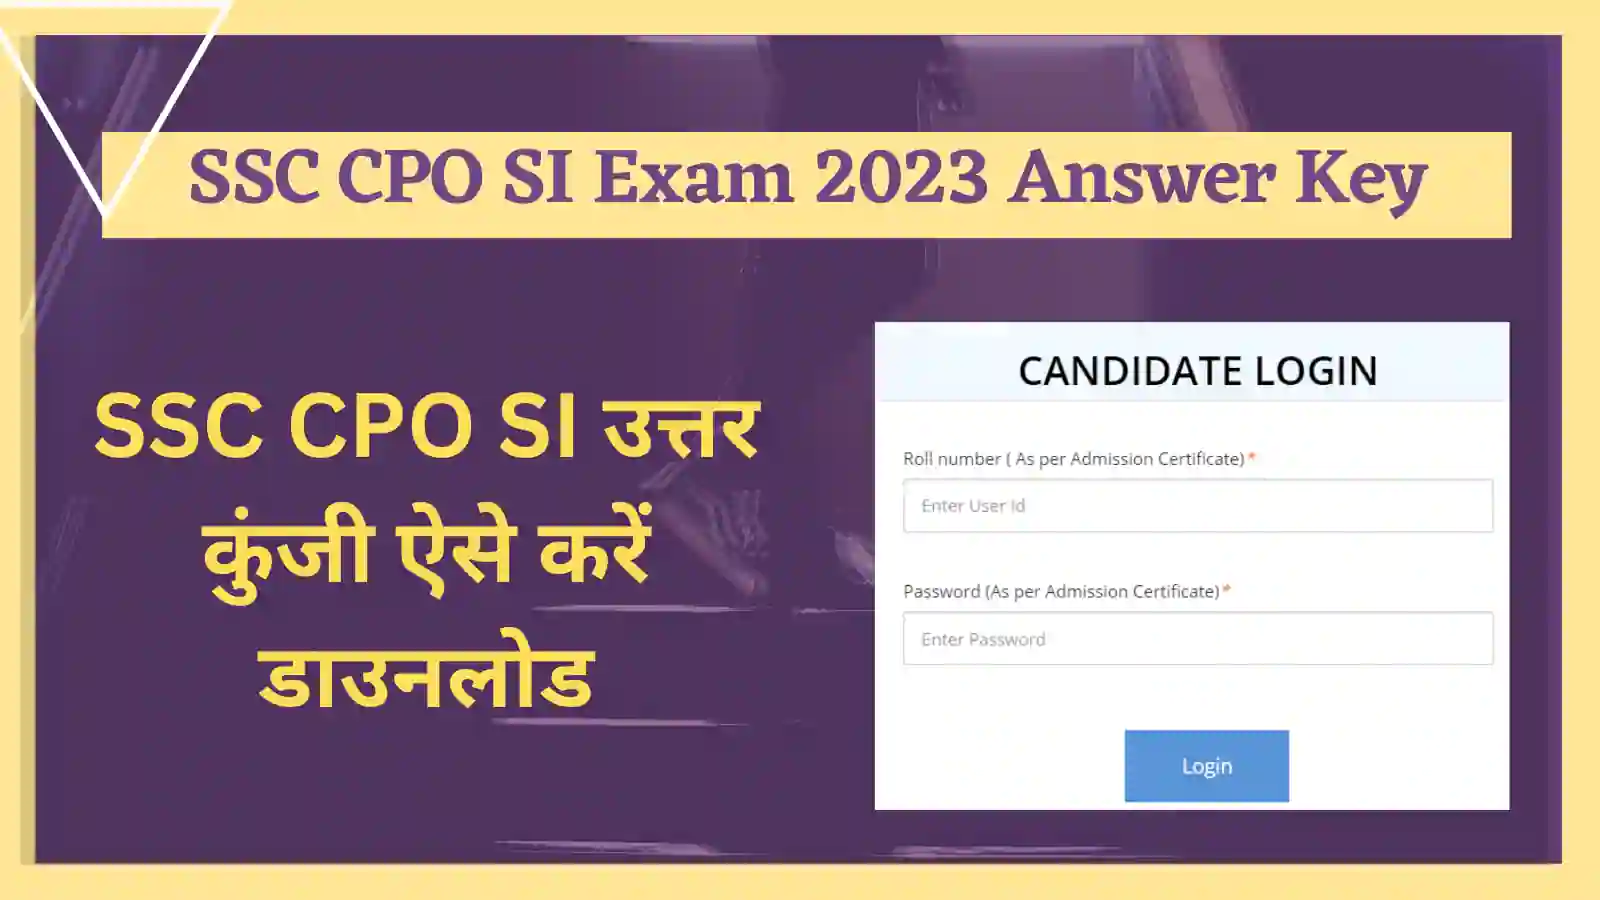 SSC CPO SI Exam 2023 Answer Key